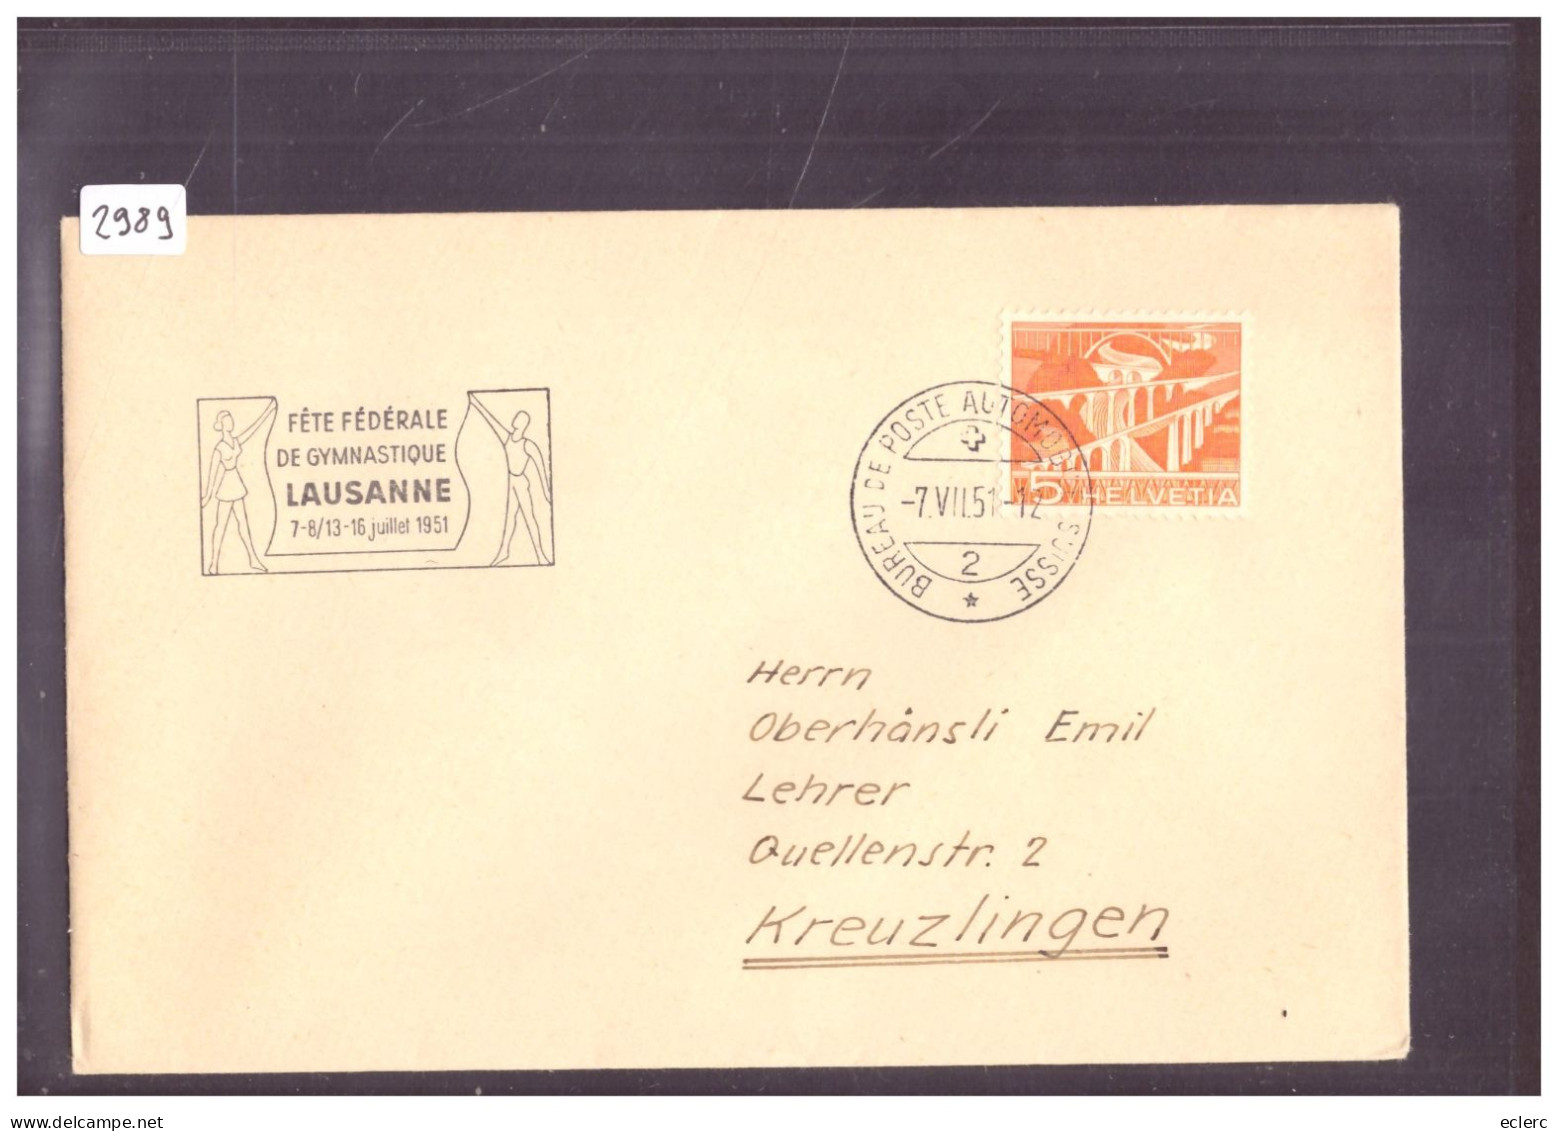 BUREAU DE POSTE AUTOMOBILE - LAUSANNE - FETE DE GYMNASTIQUE 1951 - SCHWEIZ.  AUTOMOBIL POSTBUREAU - Postmark Collection